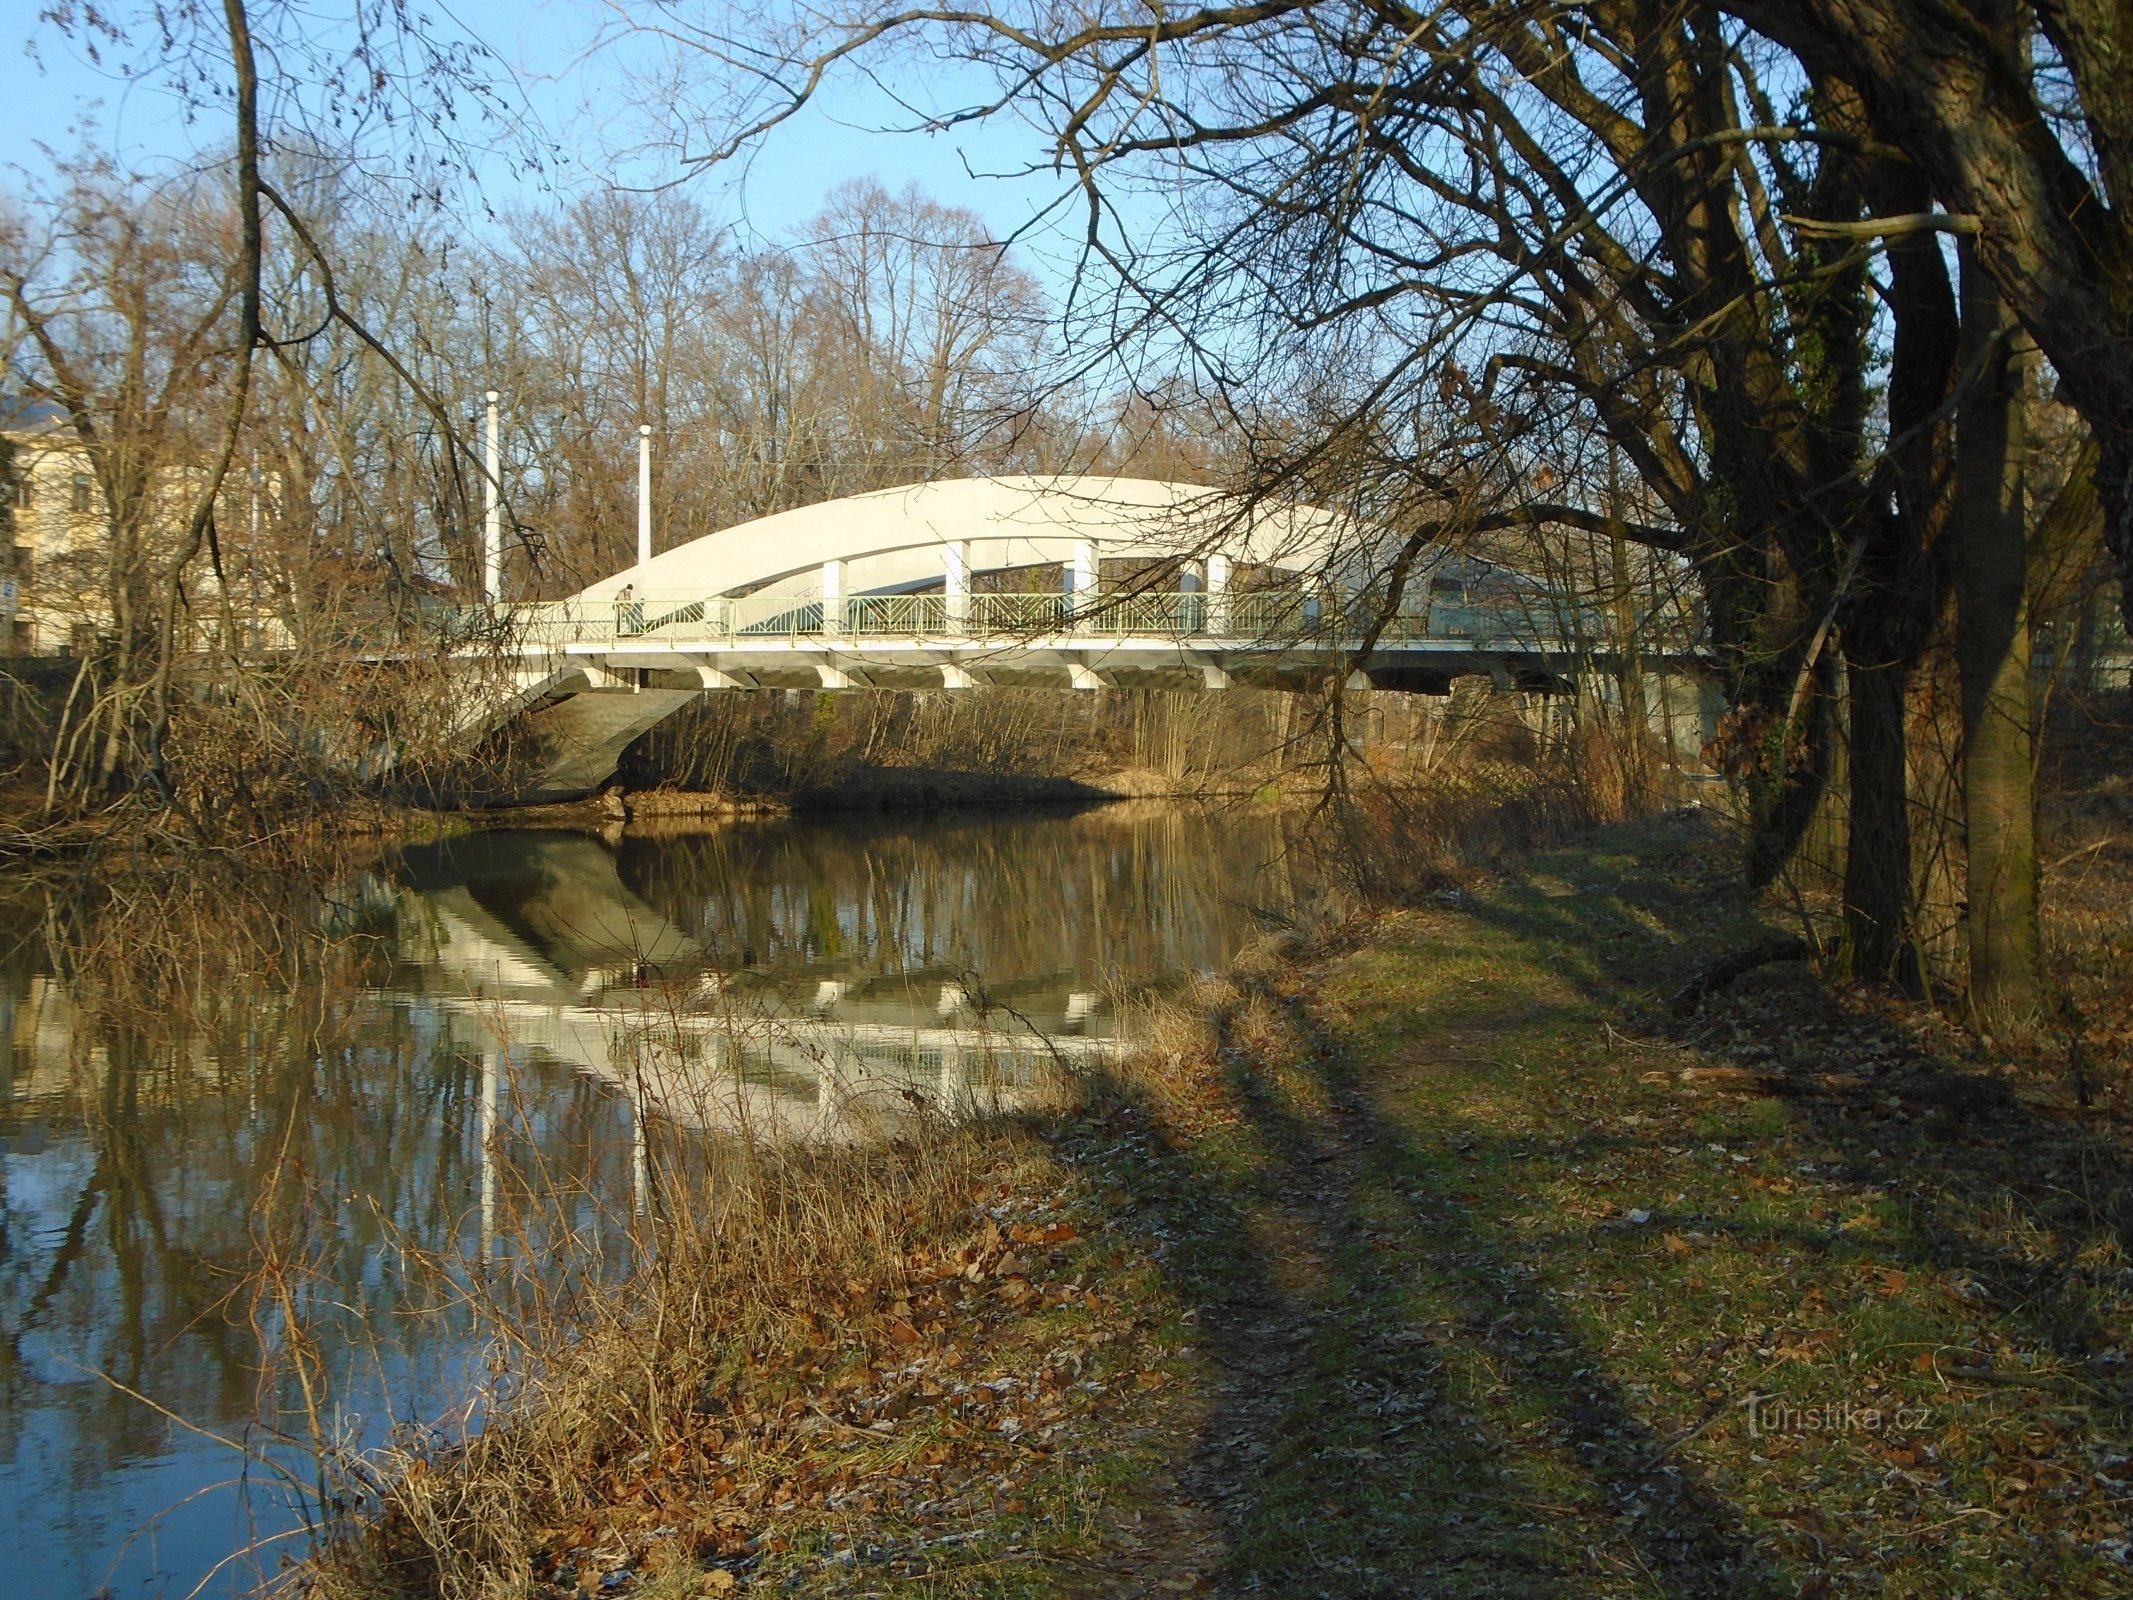 Malšovick-Brücke (Hradec Králové)